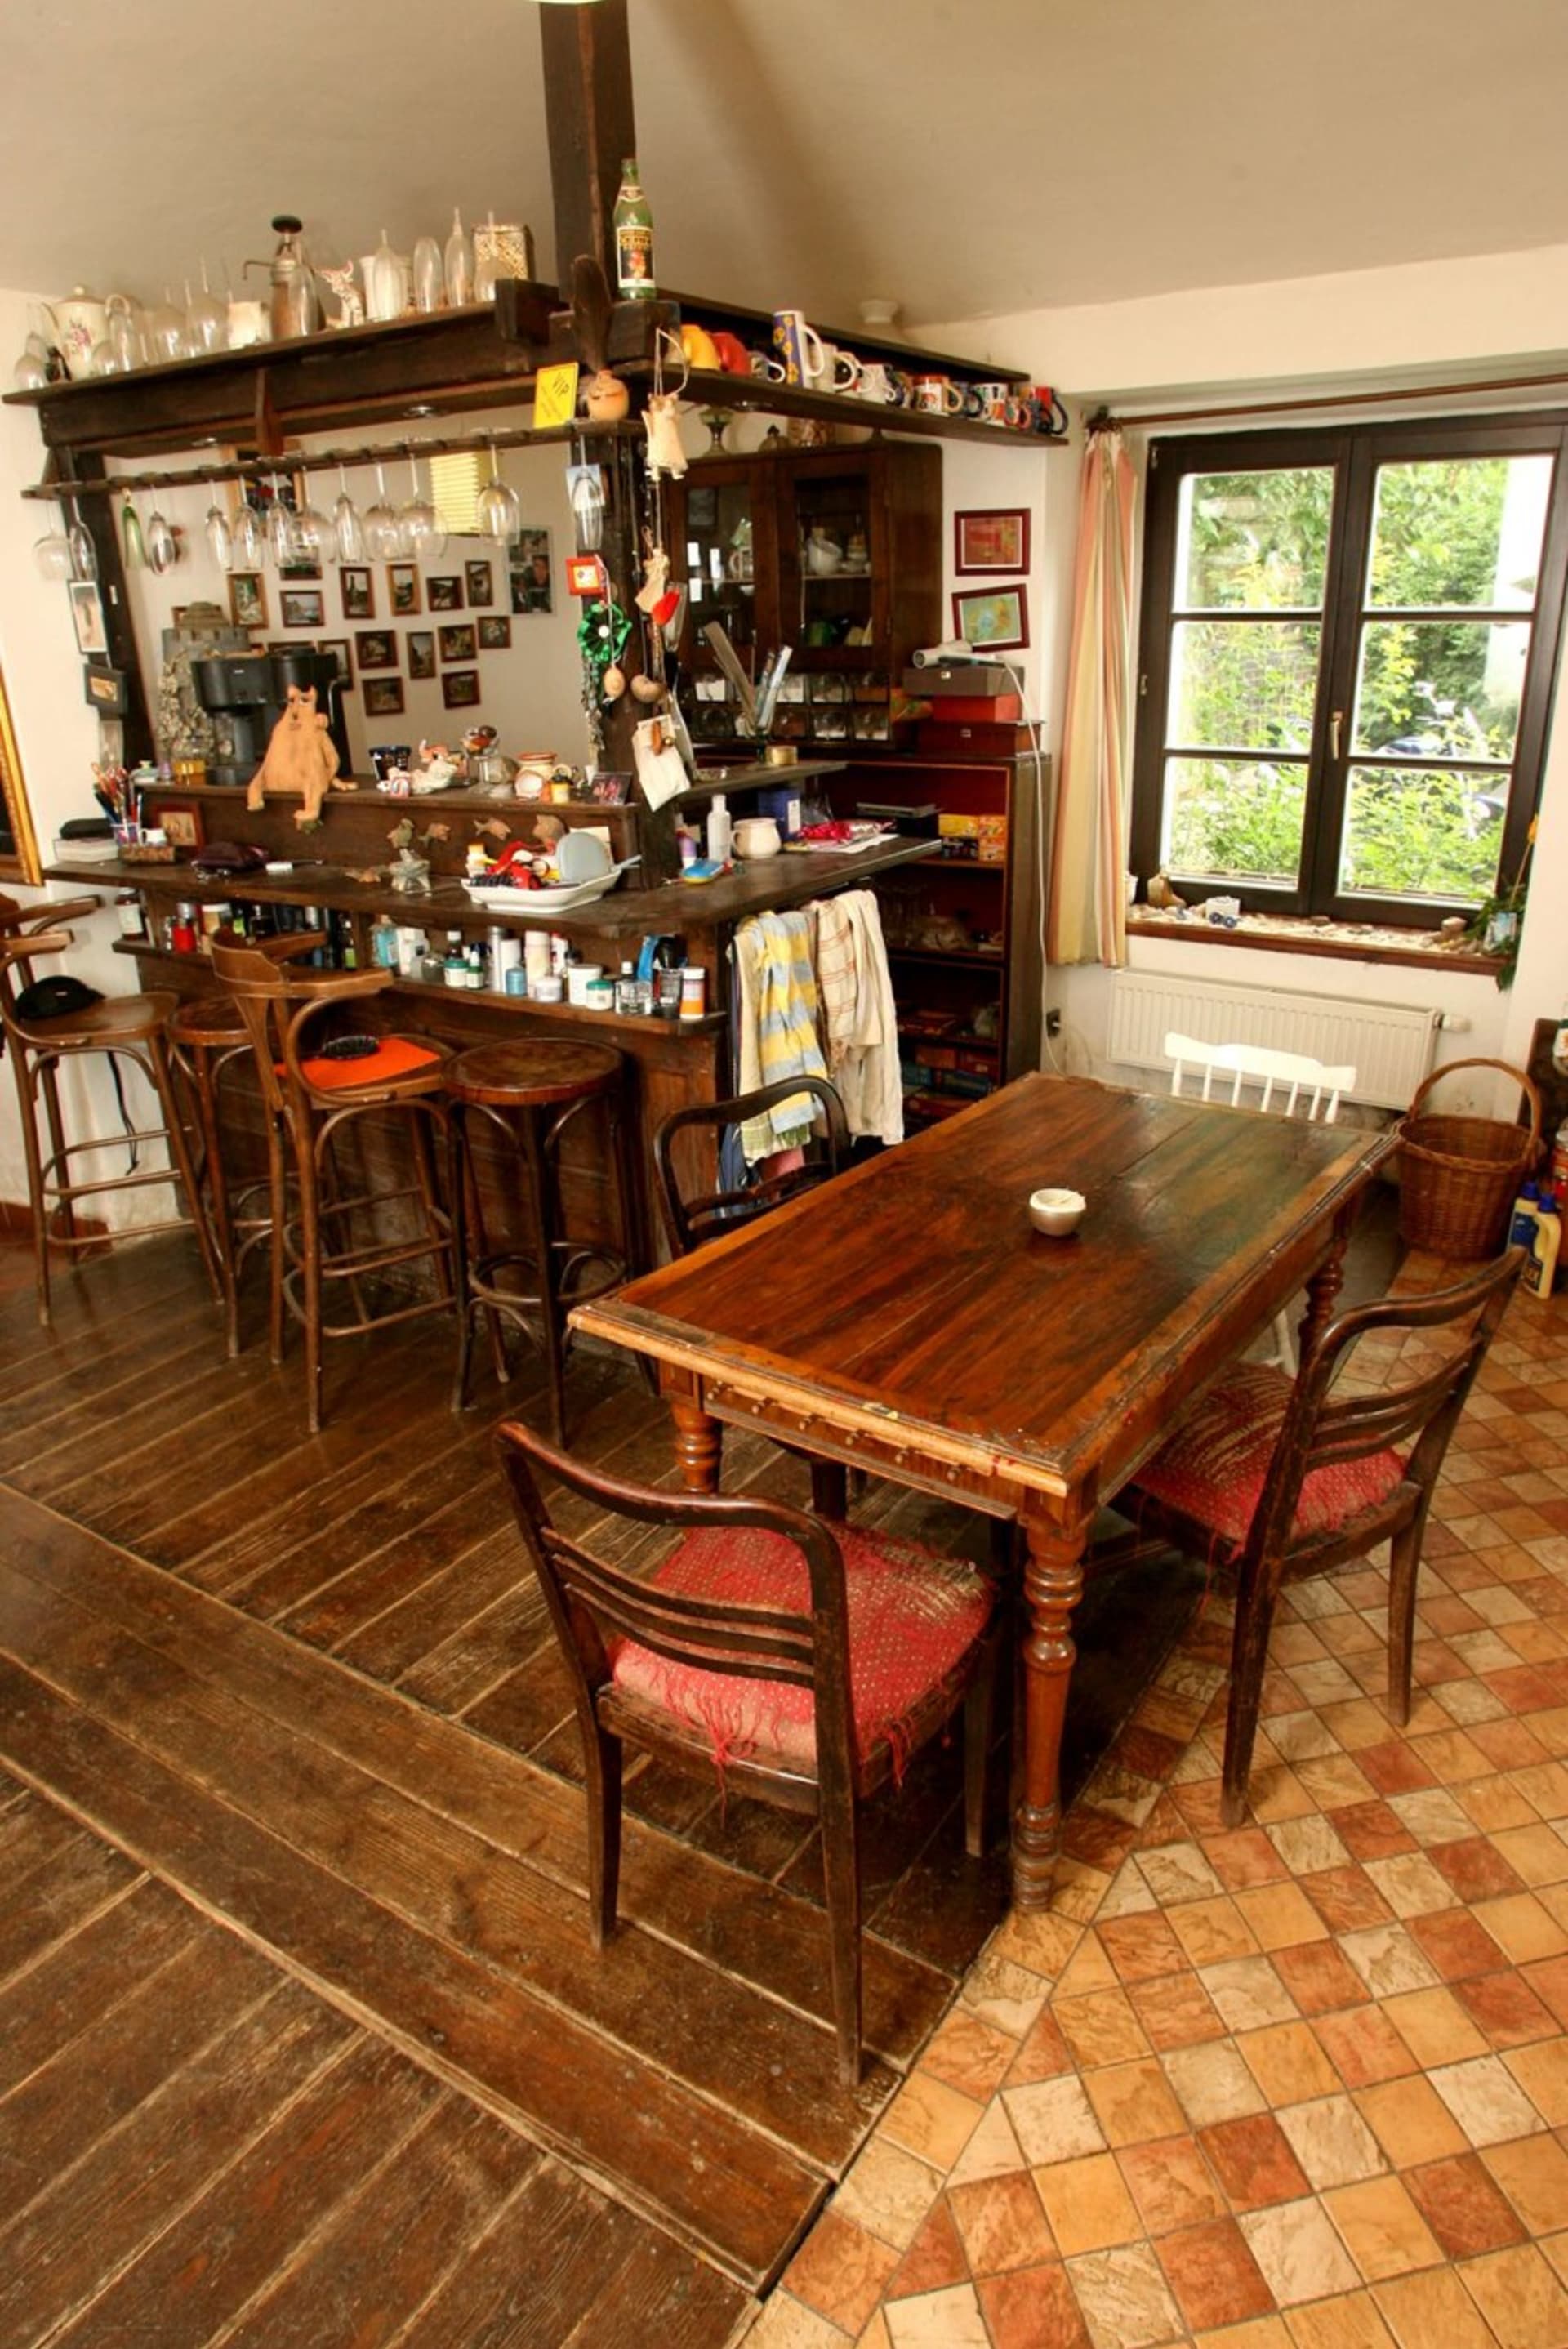 Kuchyni dominuje bar, který si herec vyrobil vlastnoručně